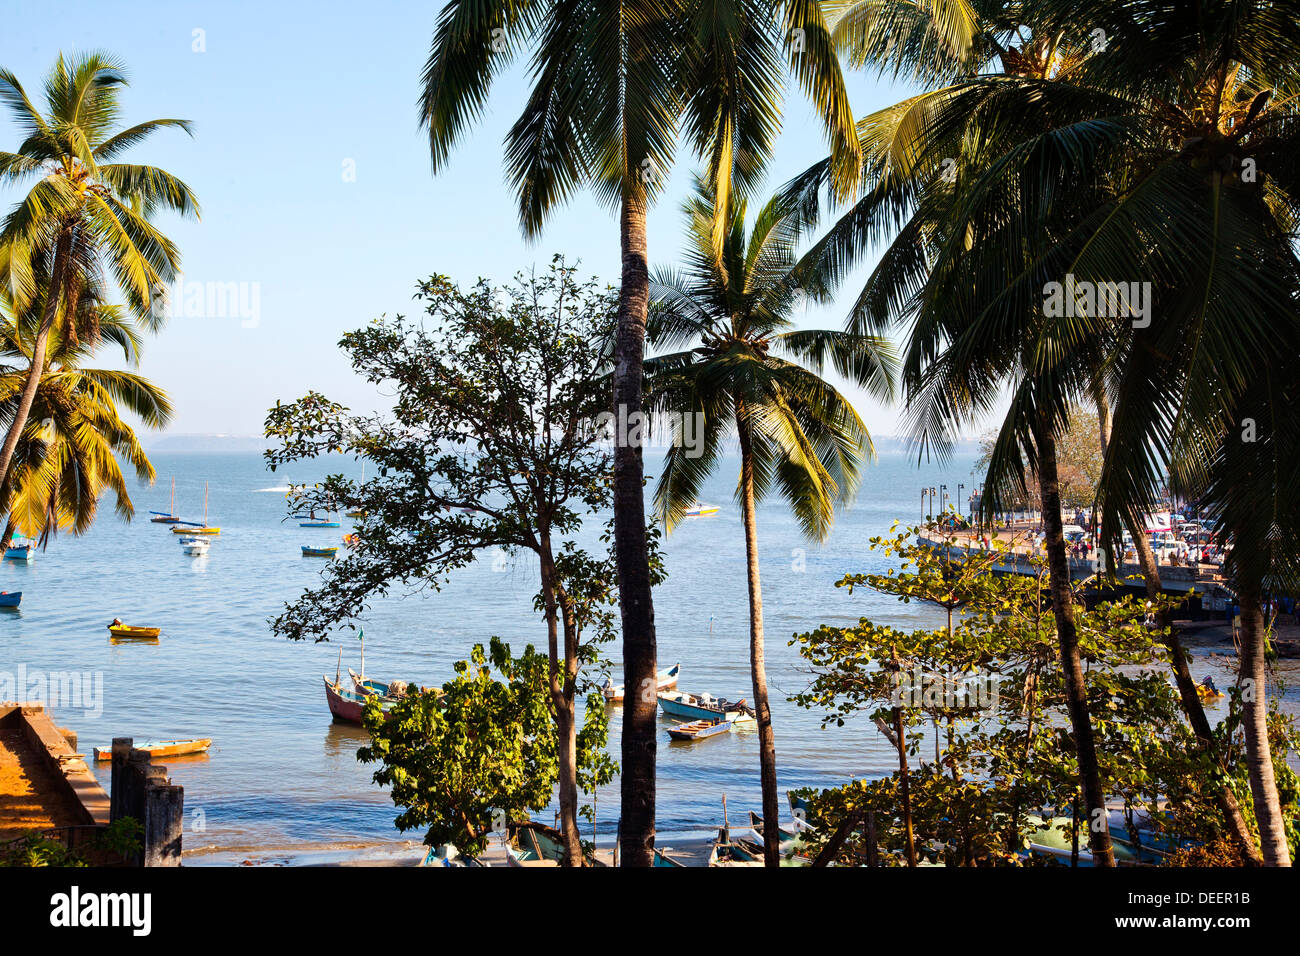 Palm trees on the beach, Dona Paula Beach, Panaji, Goa, India Stock Photo